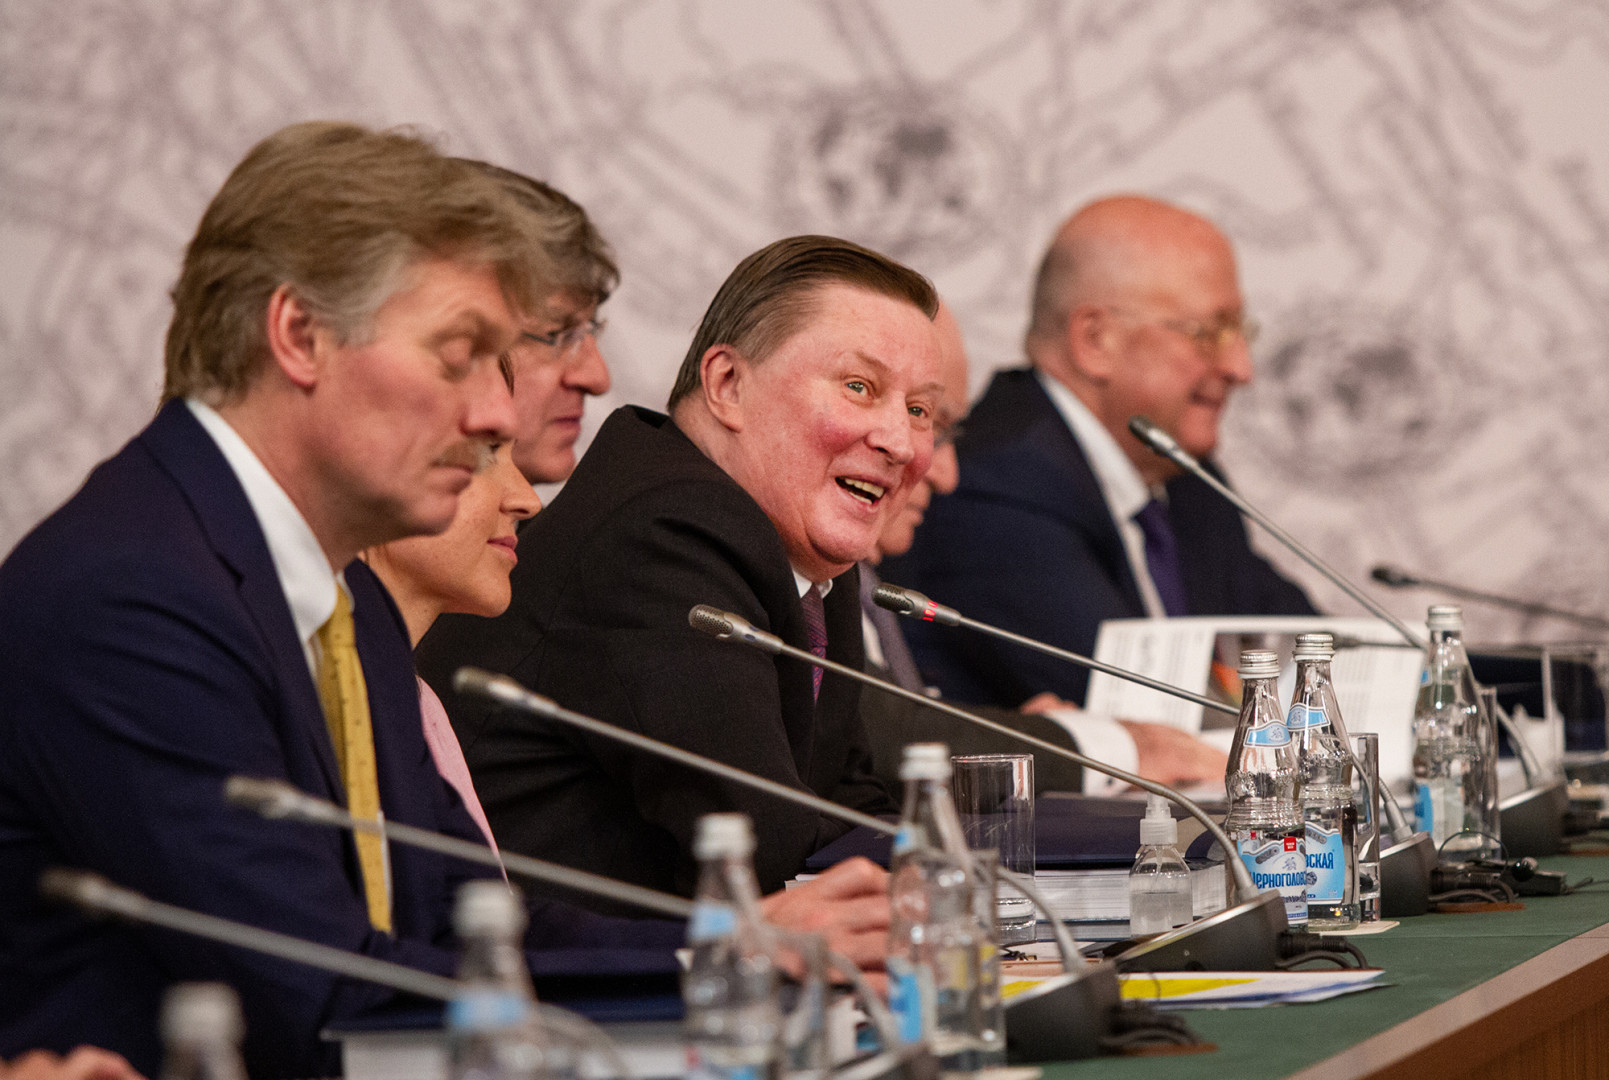 Заседание Попечительского Совета Русского географического общества 2021